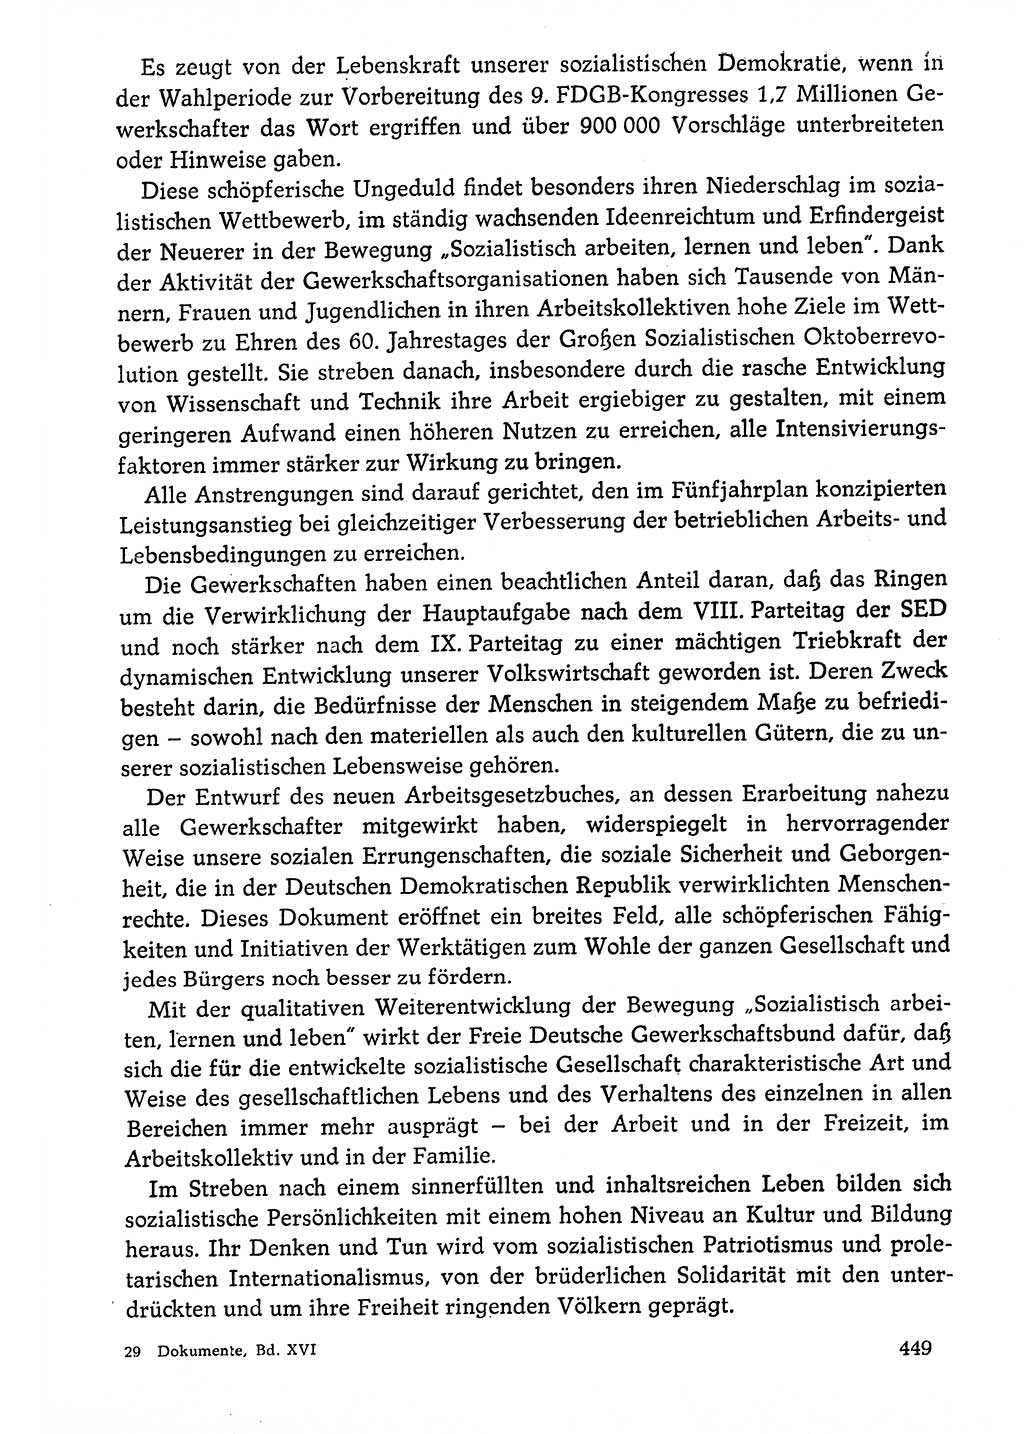 Dokumente der Sozialistischen Einheitspartei Deutschlands (SED) [Deutsche Demokratische Republik (DDR)] 1976-1977, Seite 449 (Dok. SED DDR 1976-1977, S. 449)